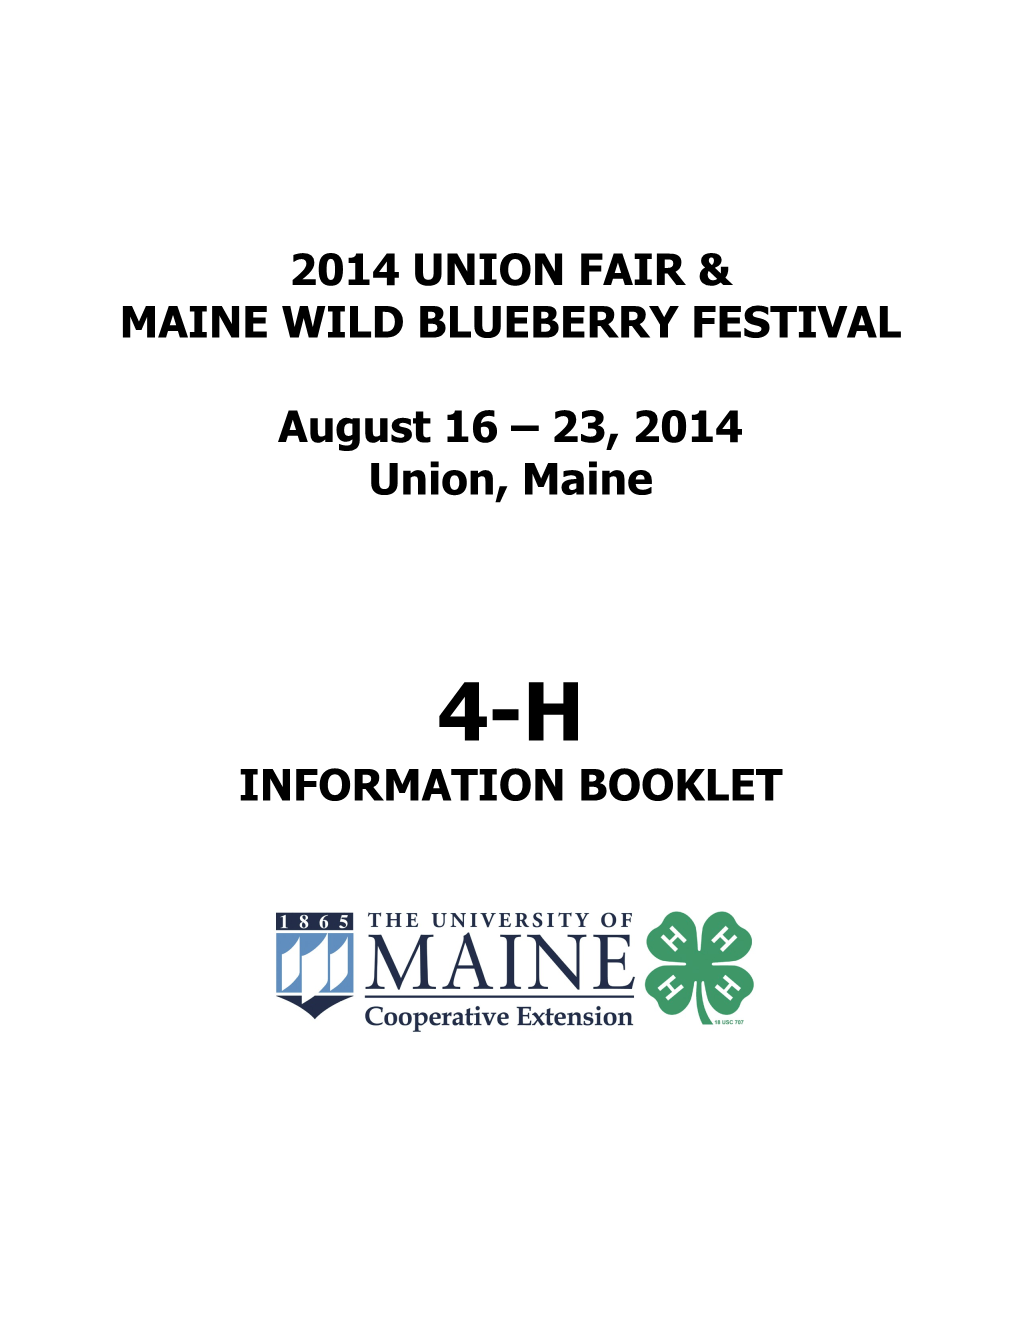 2014 Union Fair & Maine Wild Blueberry Festival